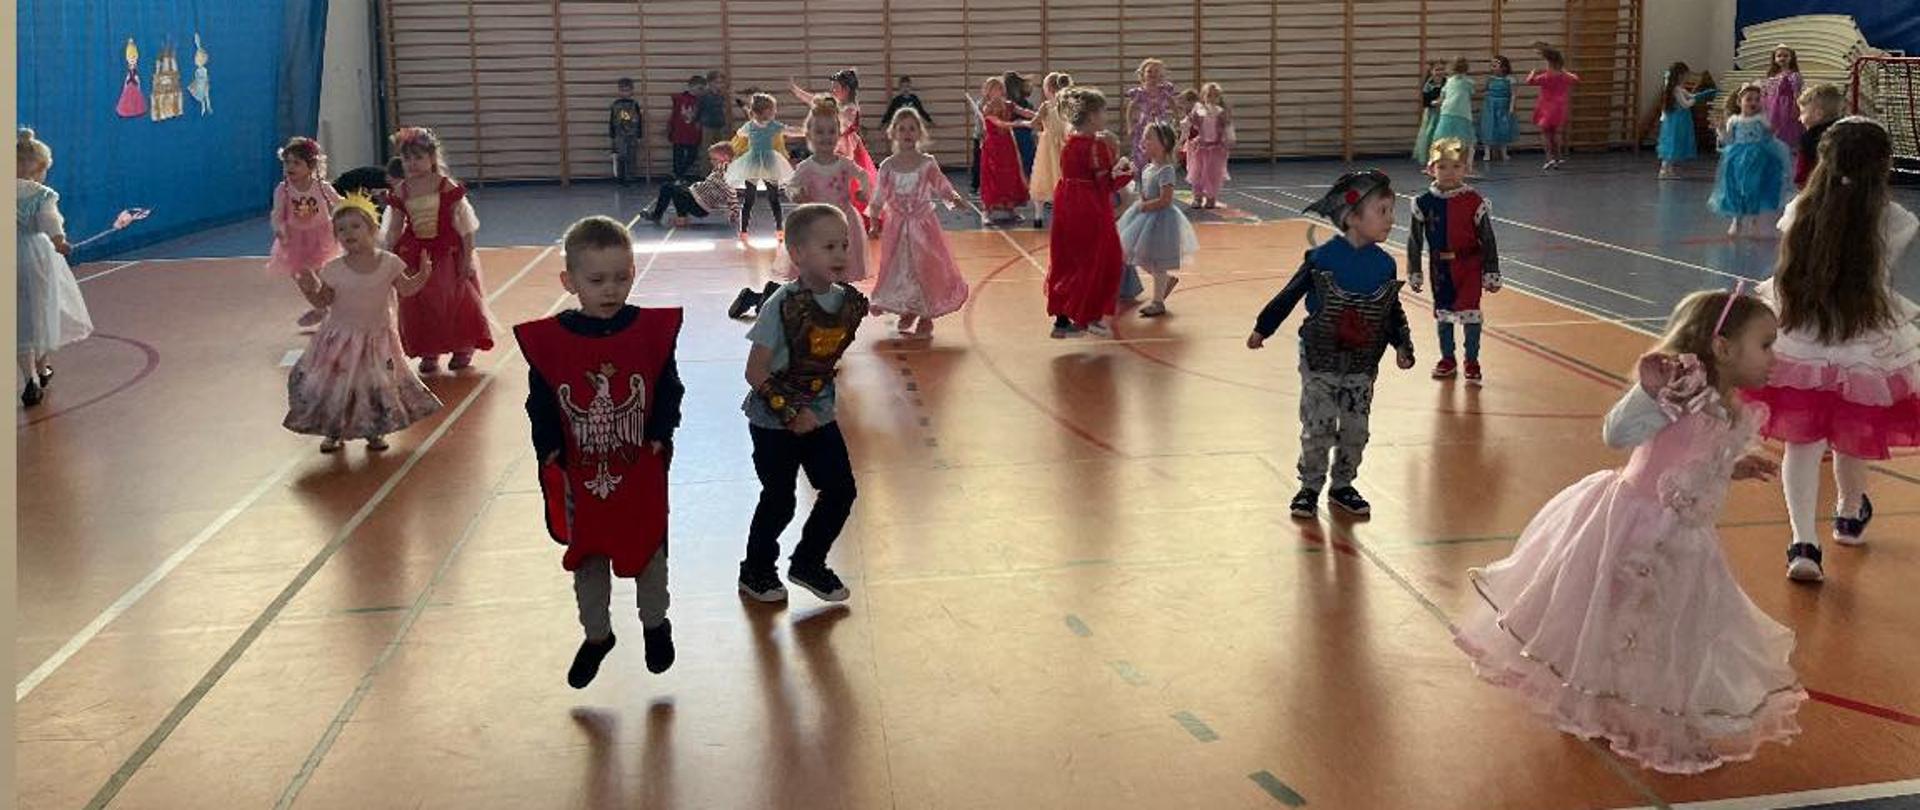 U góry dziewczynka w czerwonej szacie tańczy z dziewczynka w koronie i biało różowej sukience w tle bawią się dzieci.
Na dole dzieci bawią się na sali gimnastycznej.